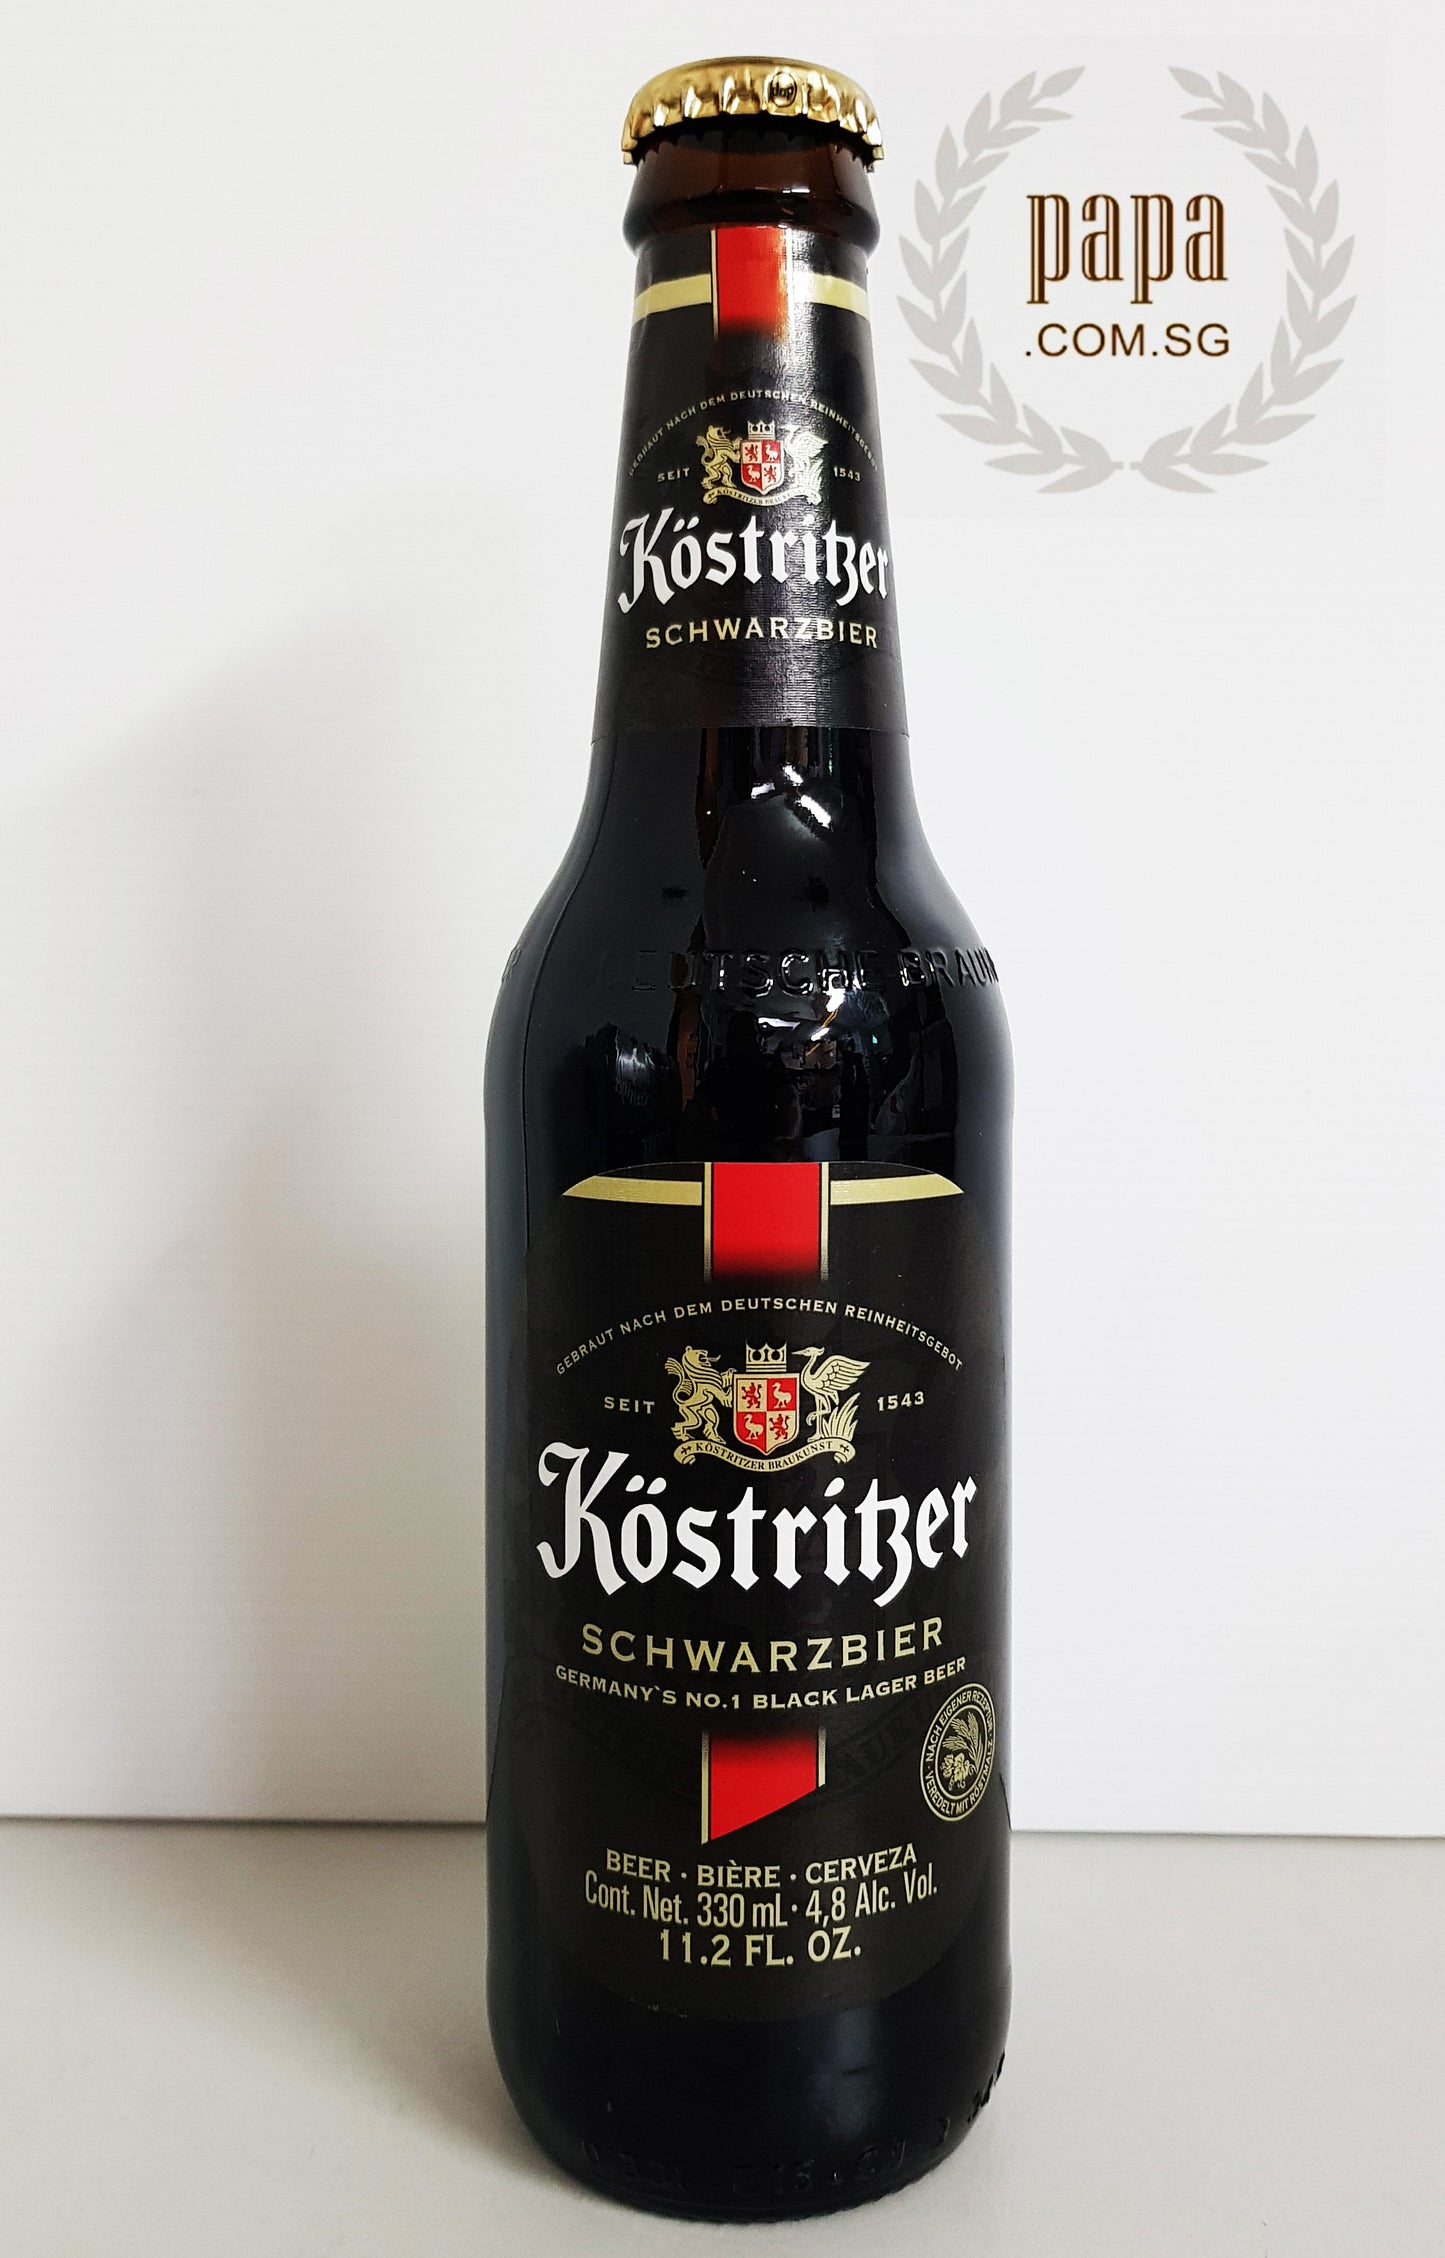 Kostritzer Schwarzbier - Traditional German Dark Lager